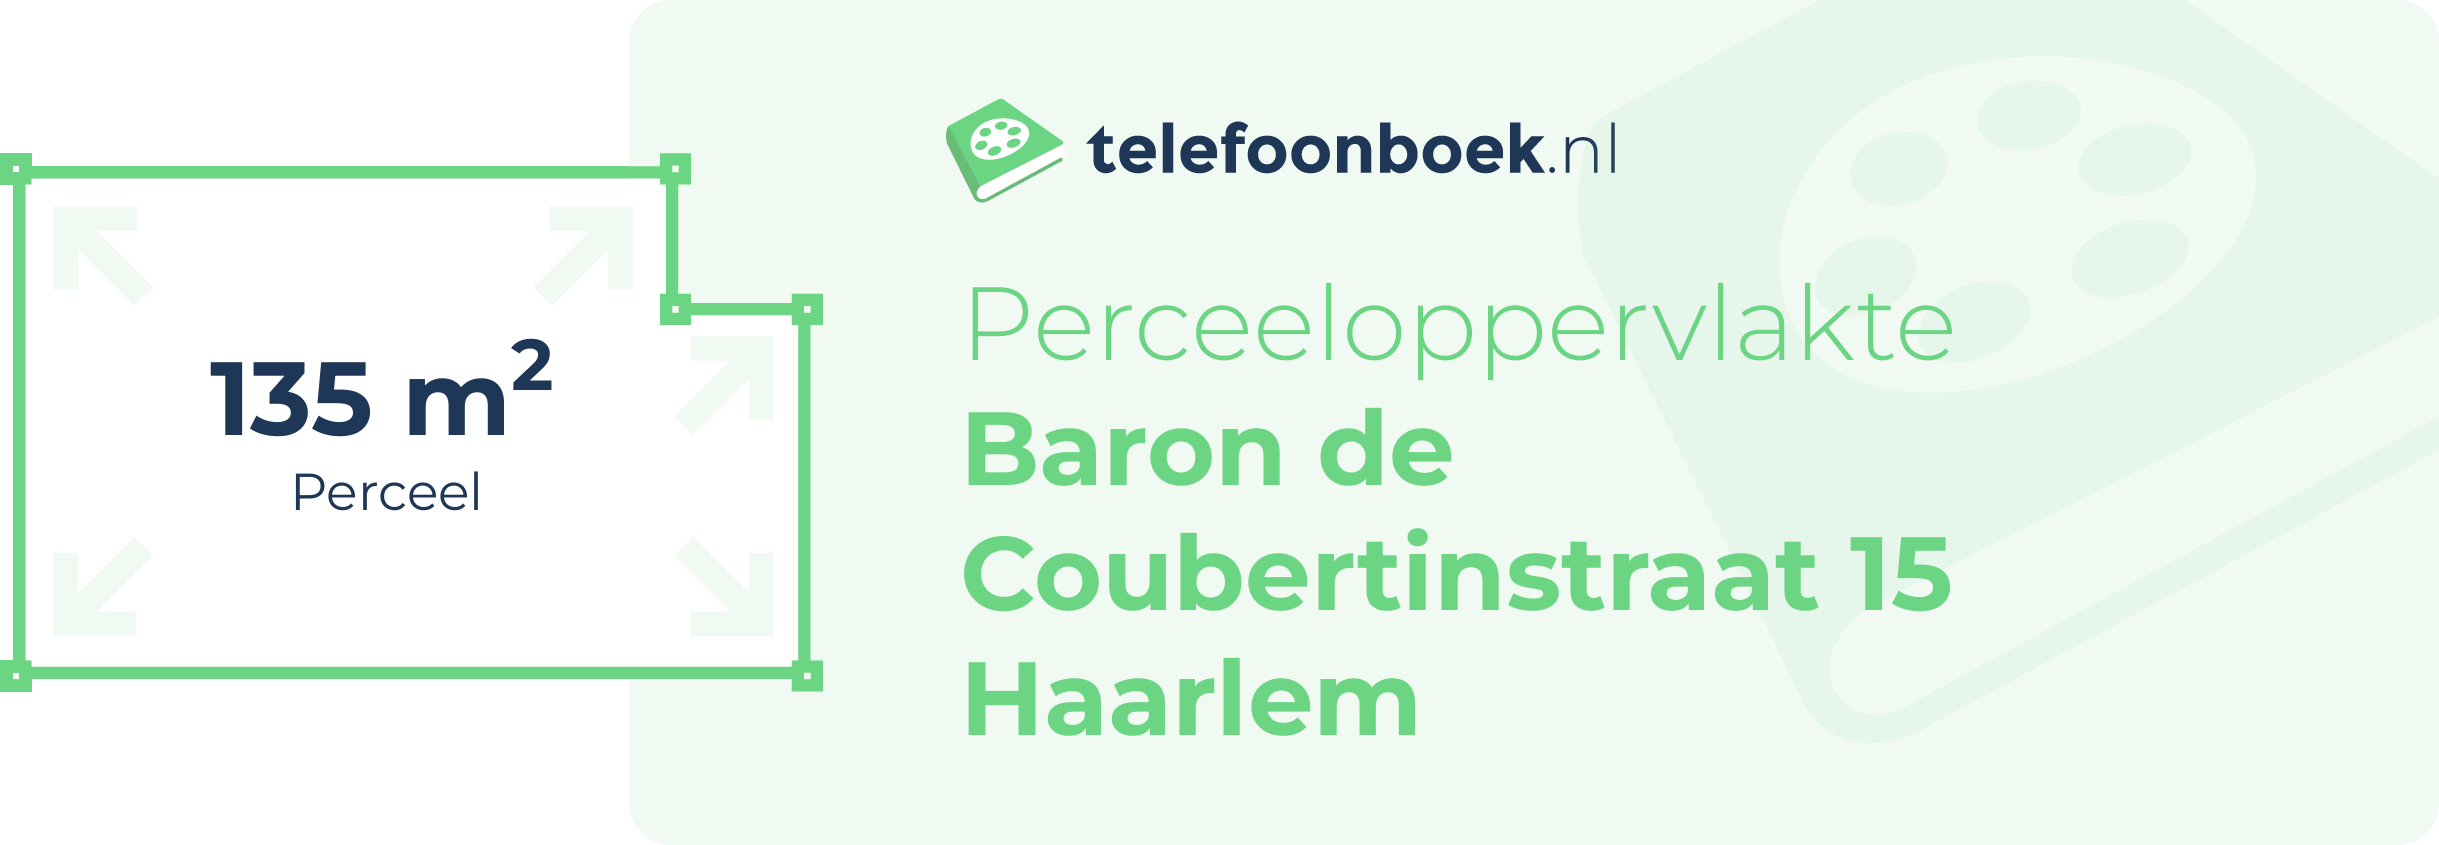 Perceeloppervlakte Baron De Coubertinstraat 15 Haarlem